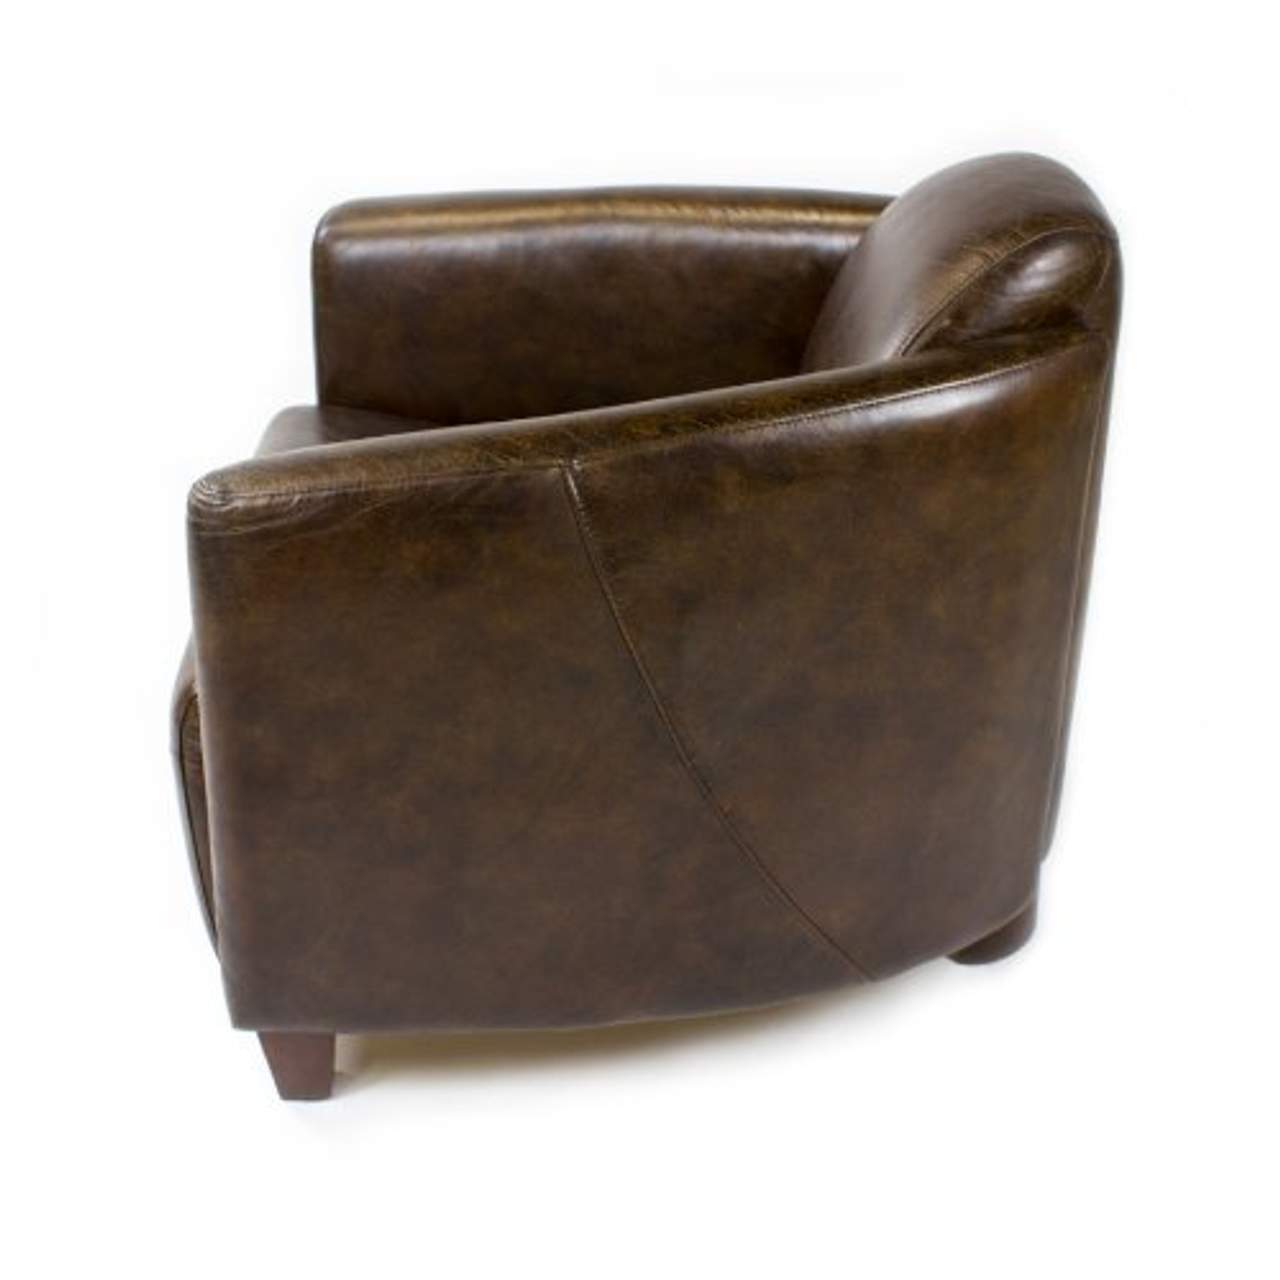 Phoenixarts Echtleder Vintage Sessel Ledersessel Braun Design Lounge